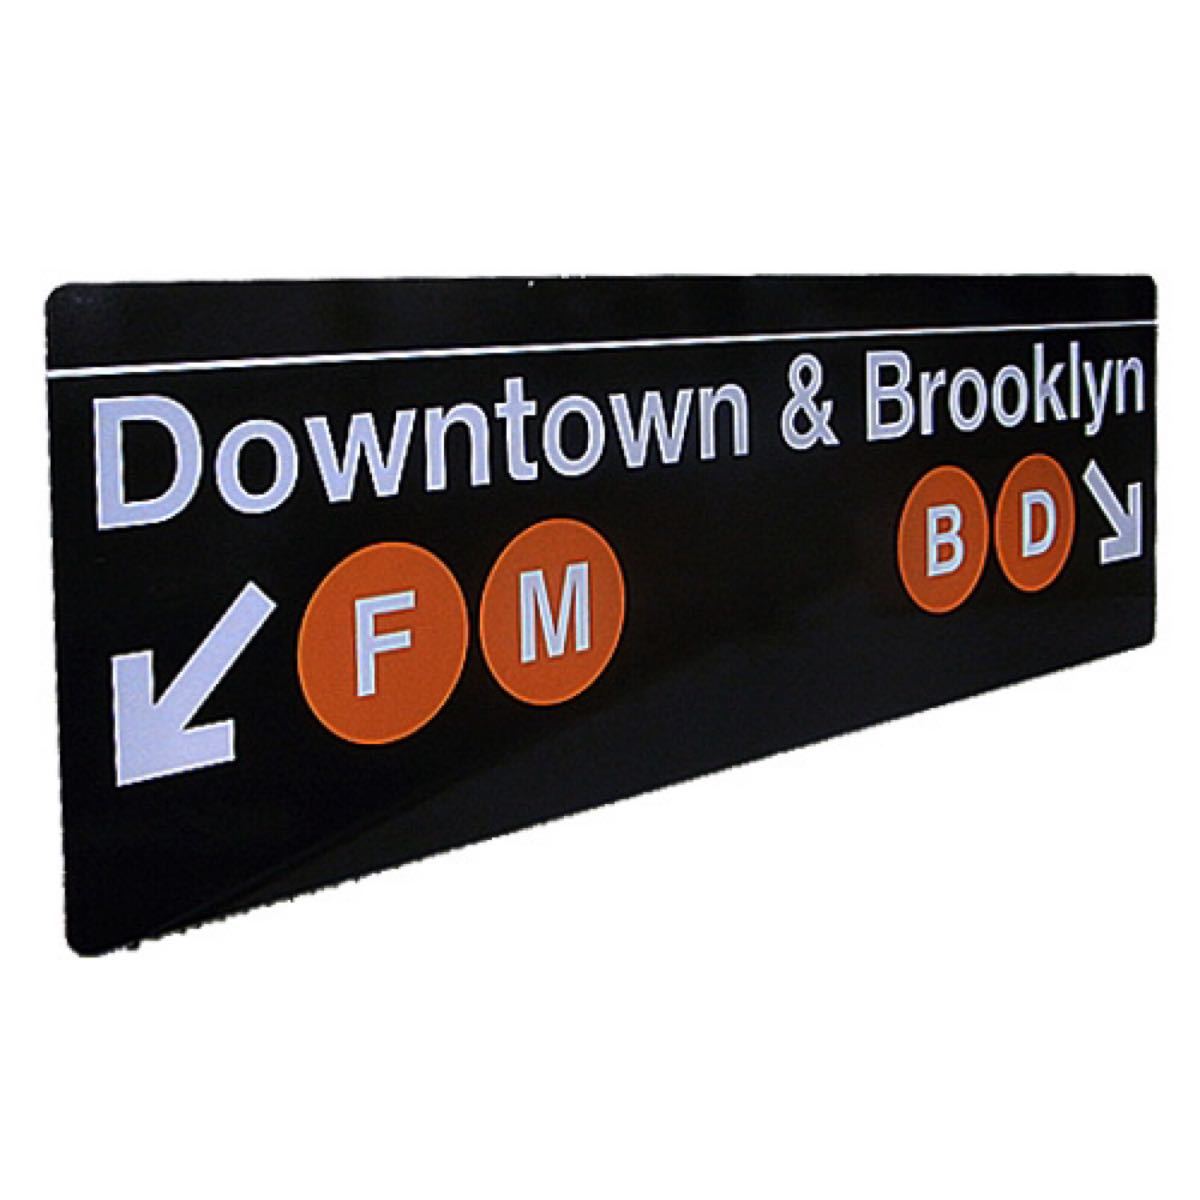 最新入荷 room NY SUBWEY 部屋 WORLD[20230327]ブリキプレート SIGN (DowntownBrooklyn-2) 